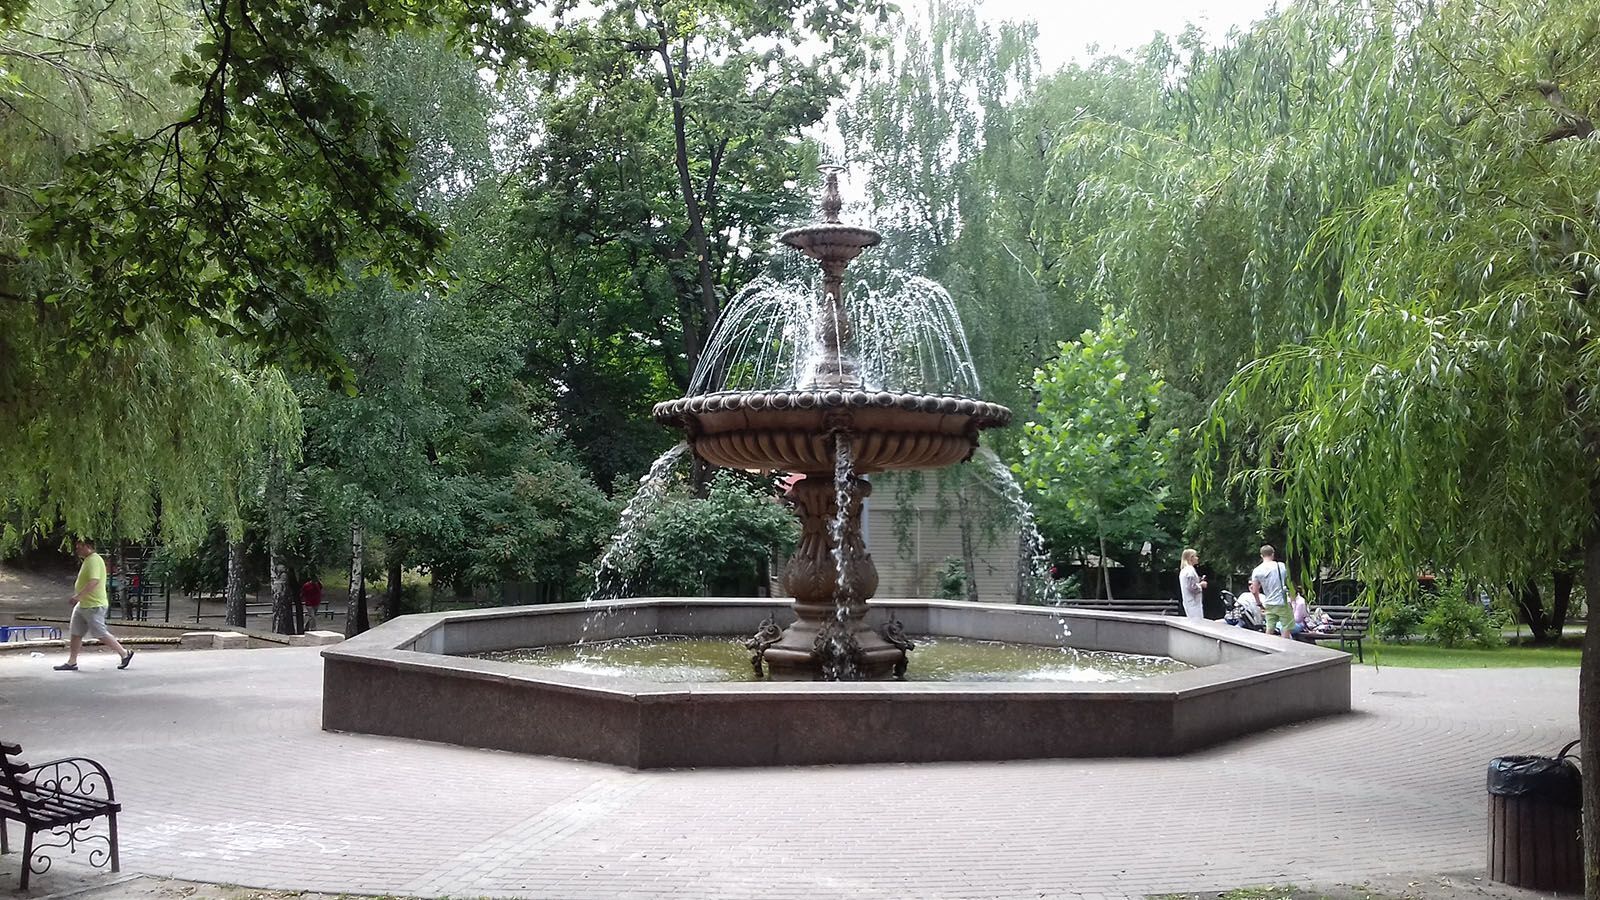 У Києві на початку ХХ століття на Софійській площі стояв один із семи фонтанів Термена. Унікальне фото